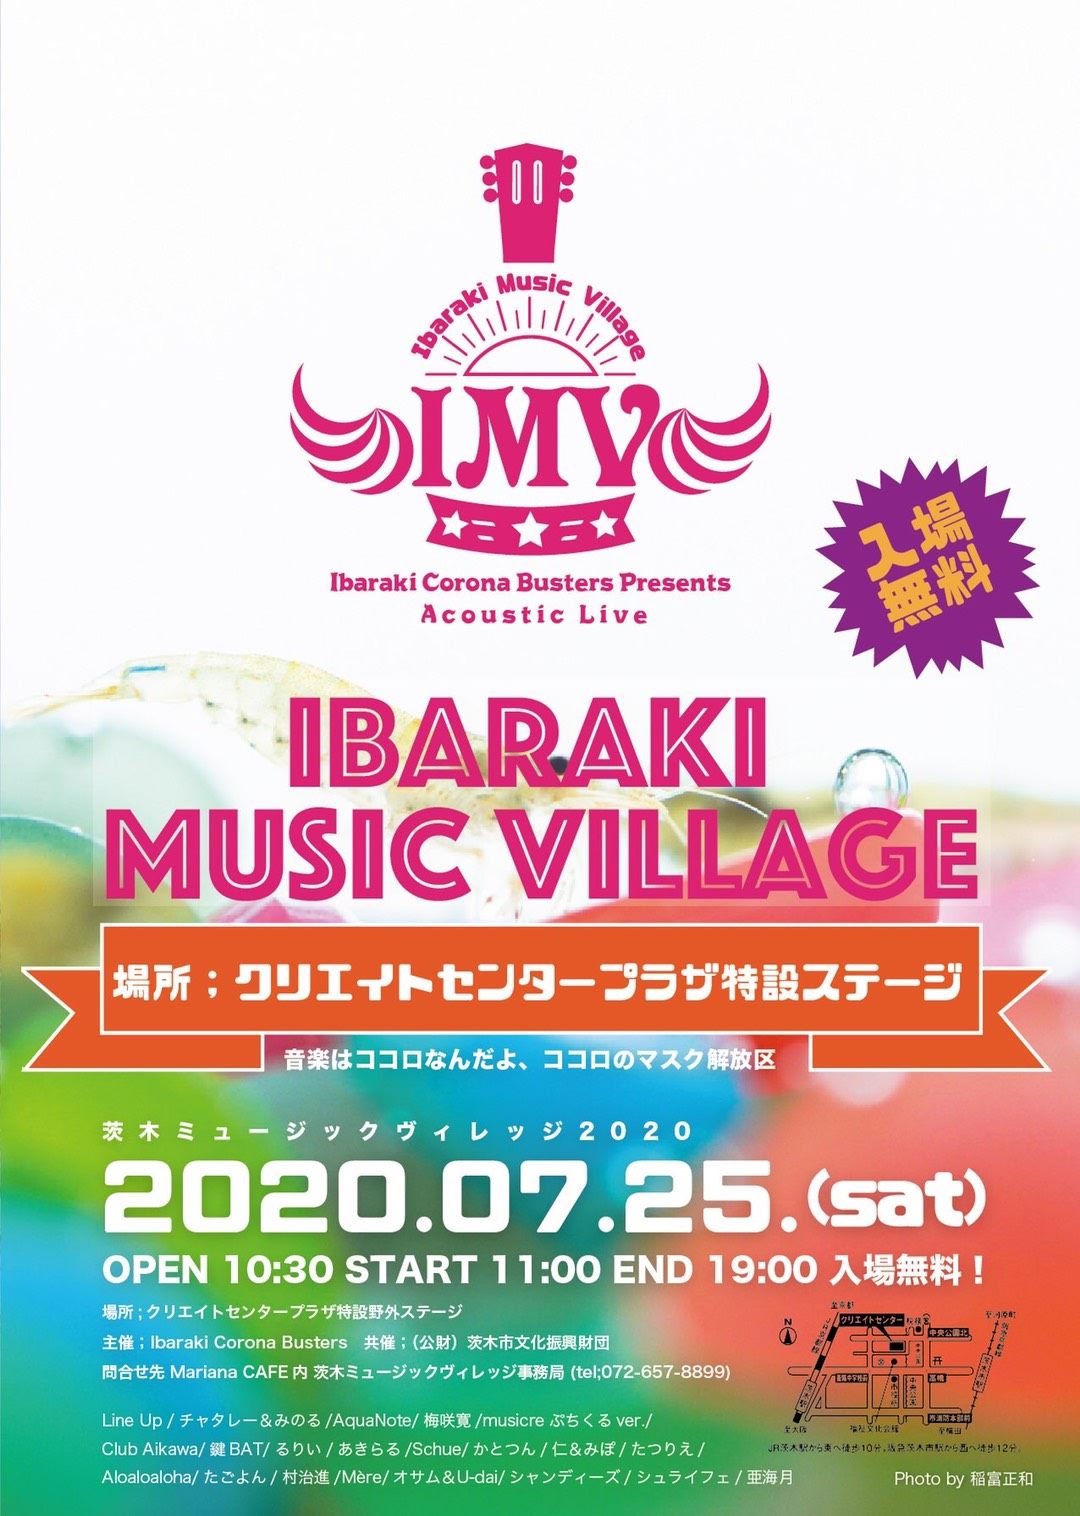 【中止】茨木コロナバスターズ presents IBARAKI MUSIC VILLAGE